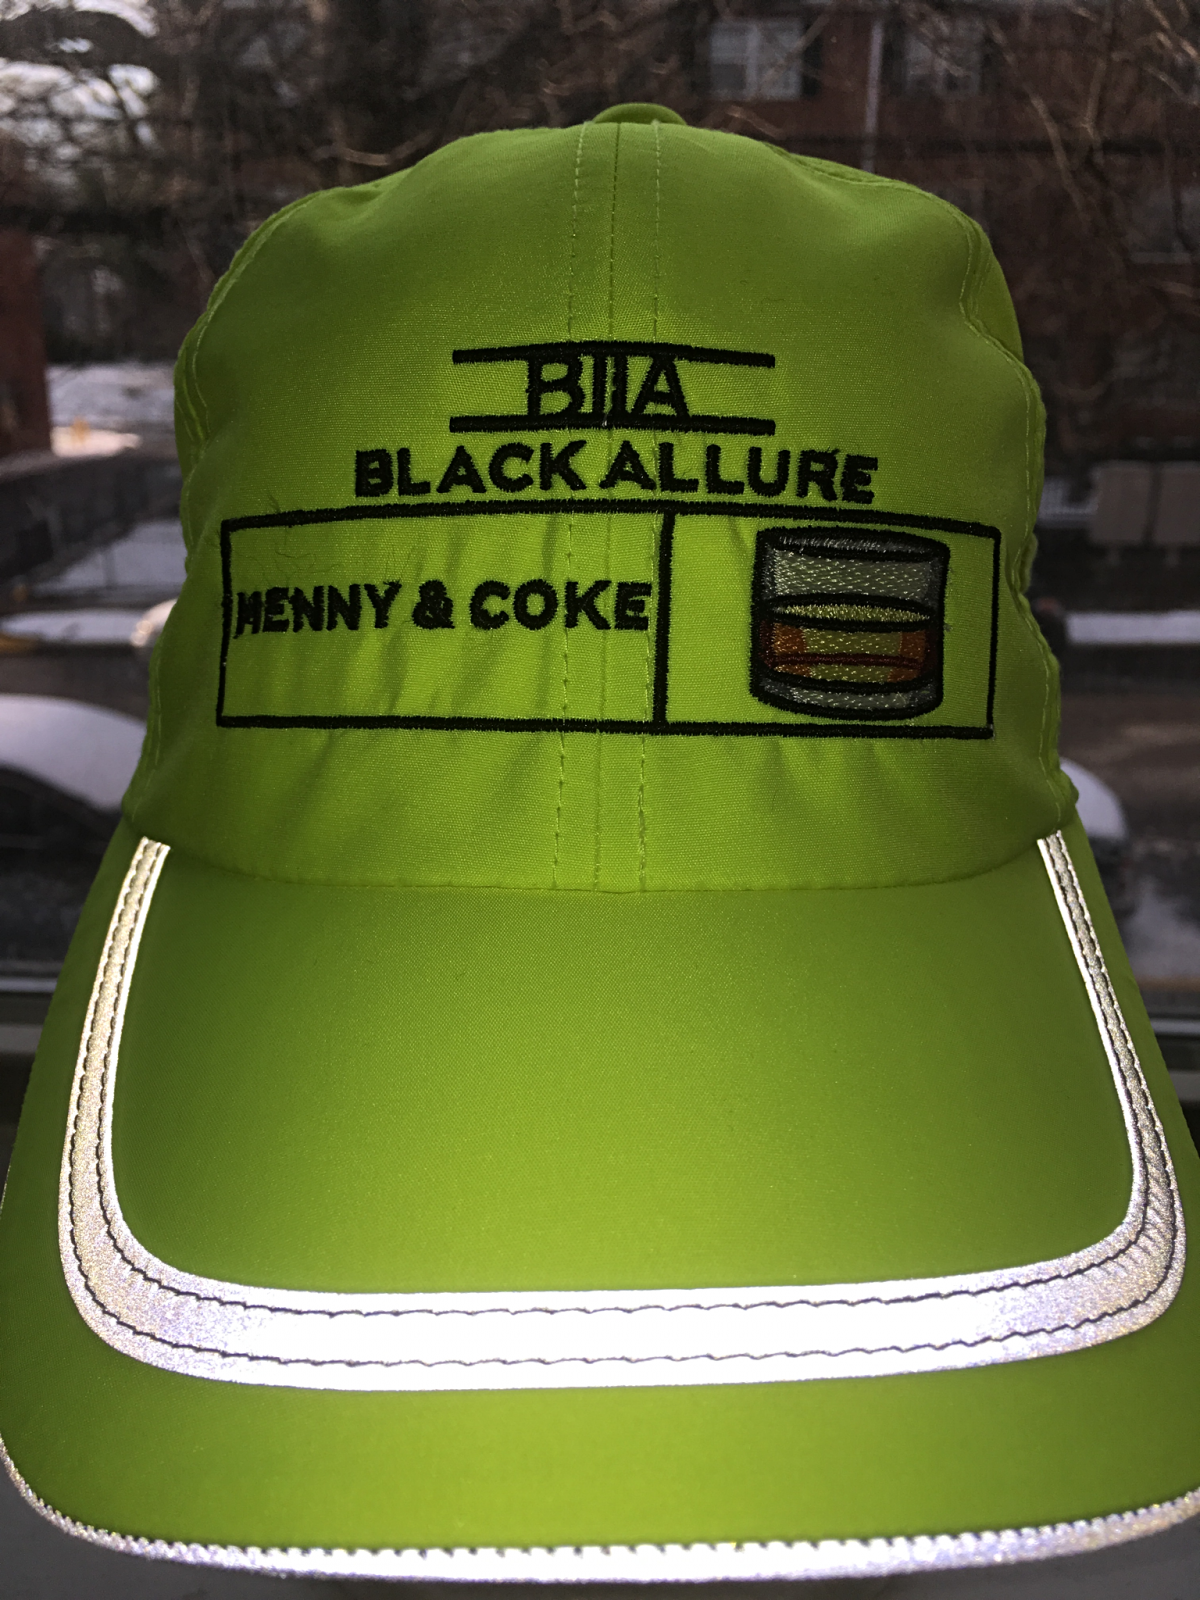 Henny & Coke Allure Hat SY